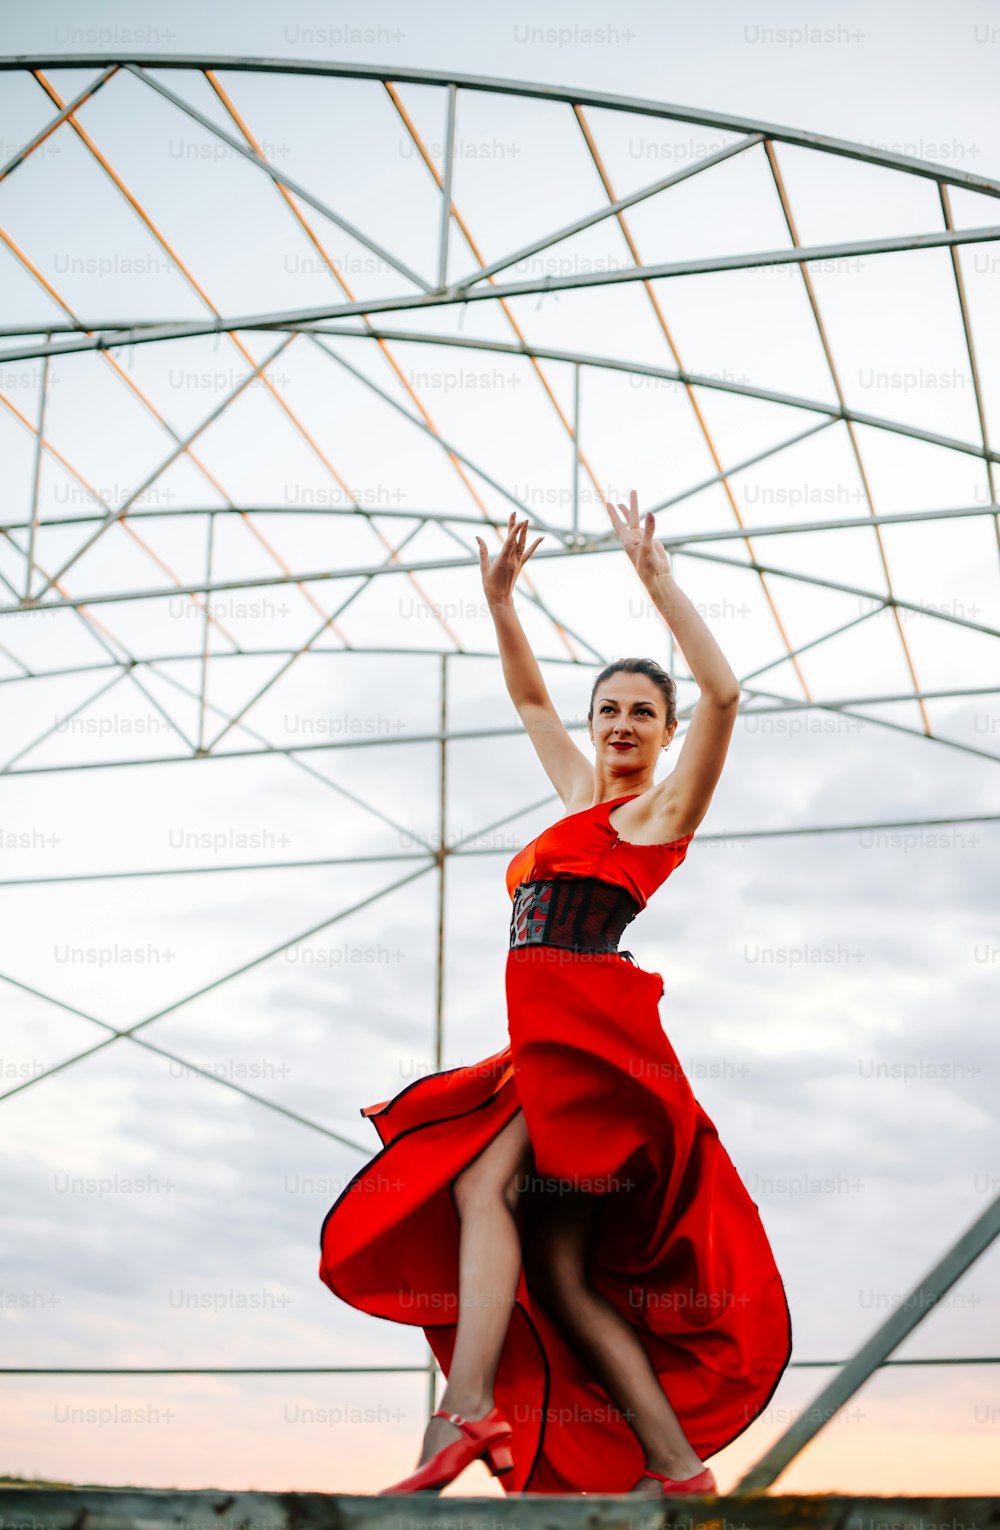 Una mujer con un vestido rojo está saltando en el aire